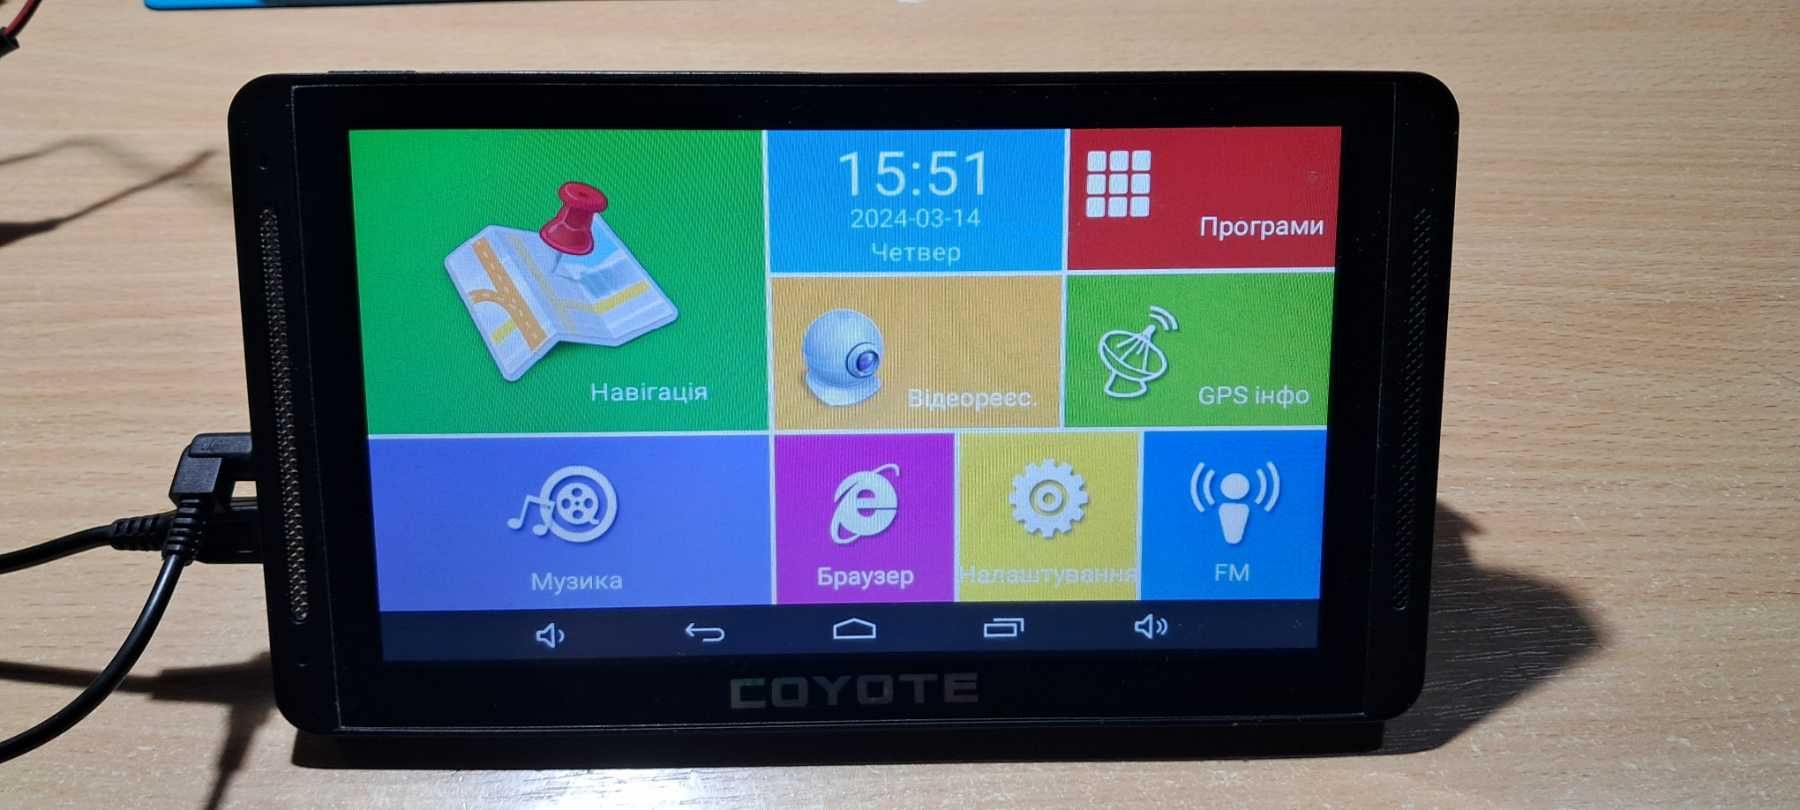 GPS навигатор + регистратор COYOTE  1Gb/16Gb на Андроид 4,6 с картами